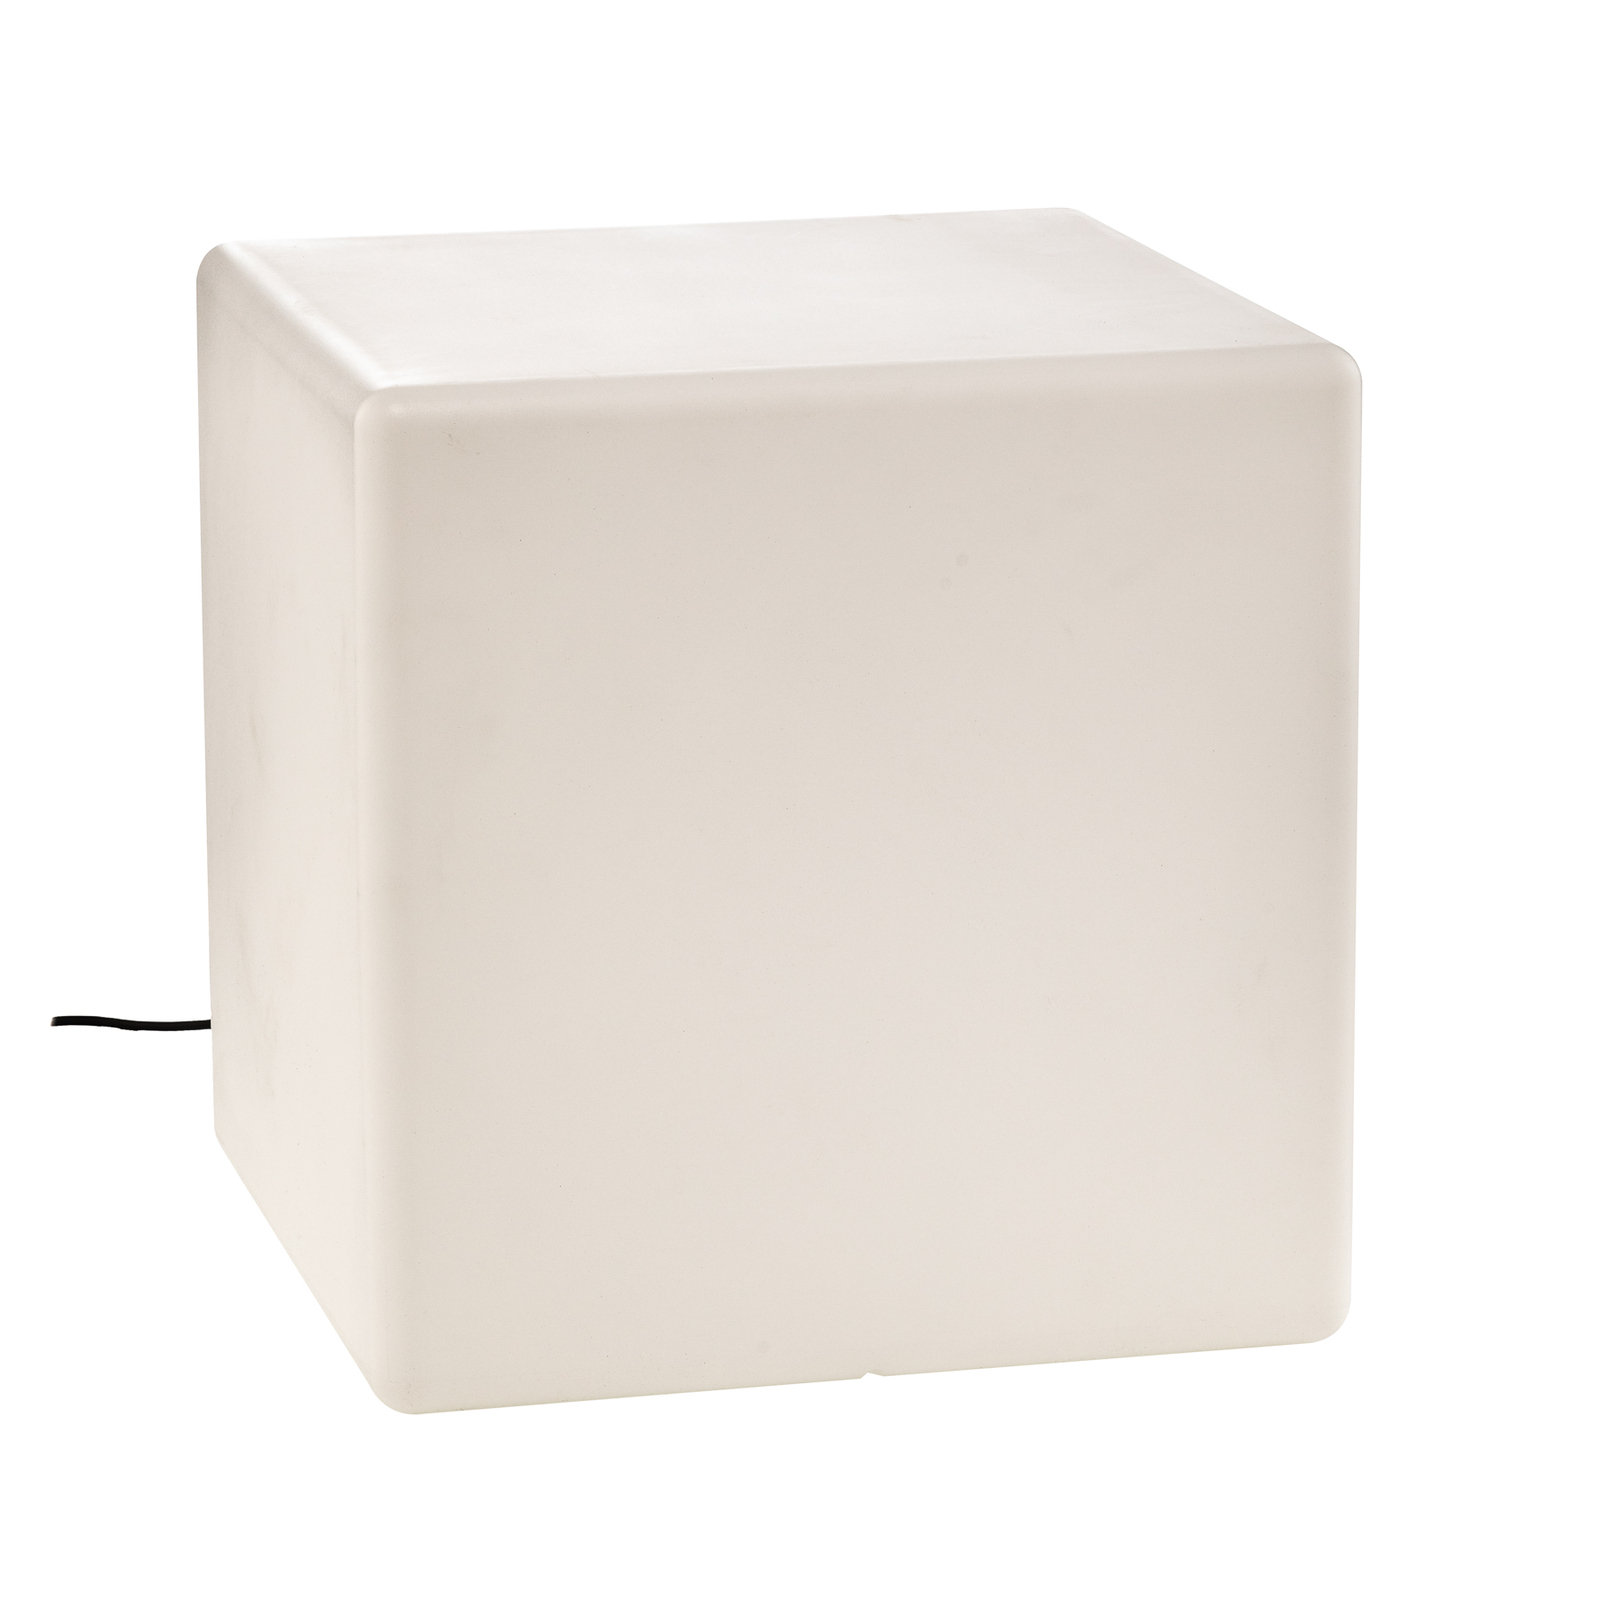 Venkovní dekorativní svítidlo Cumulus Cube L, 59 x 59 cm